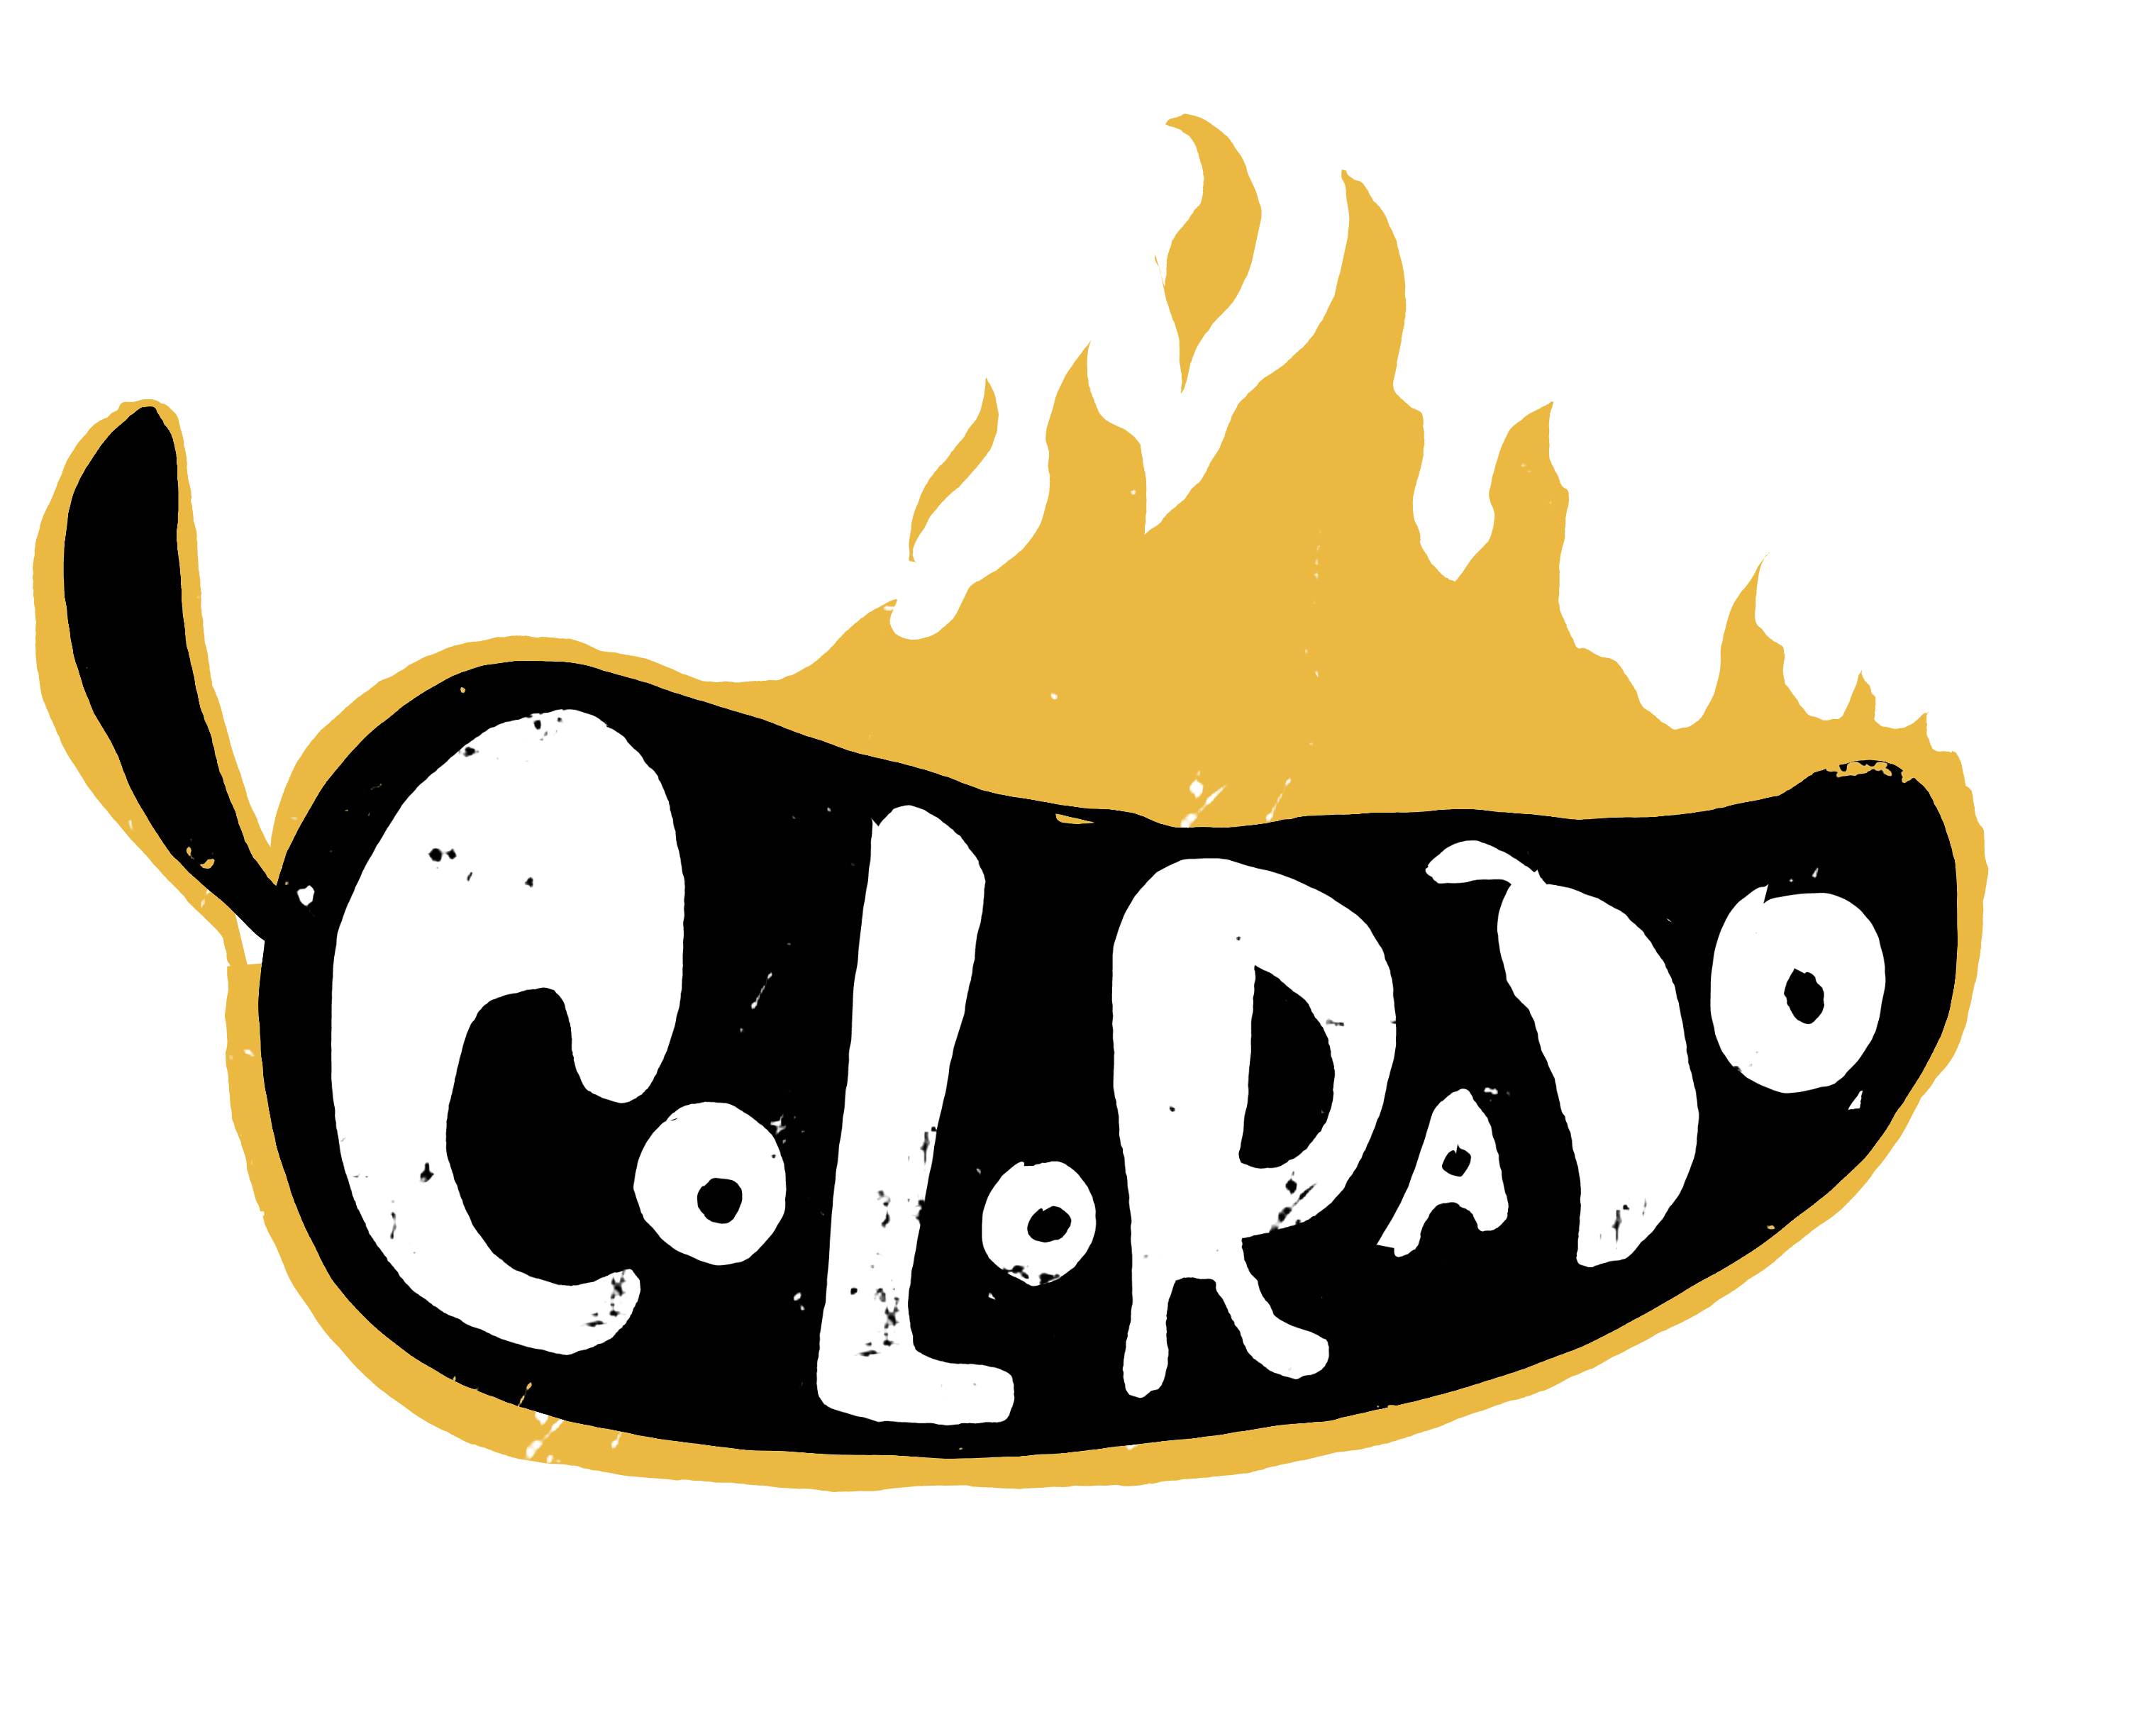 Colorado Hot Sauce Co.